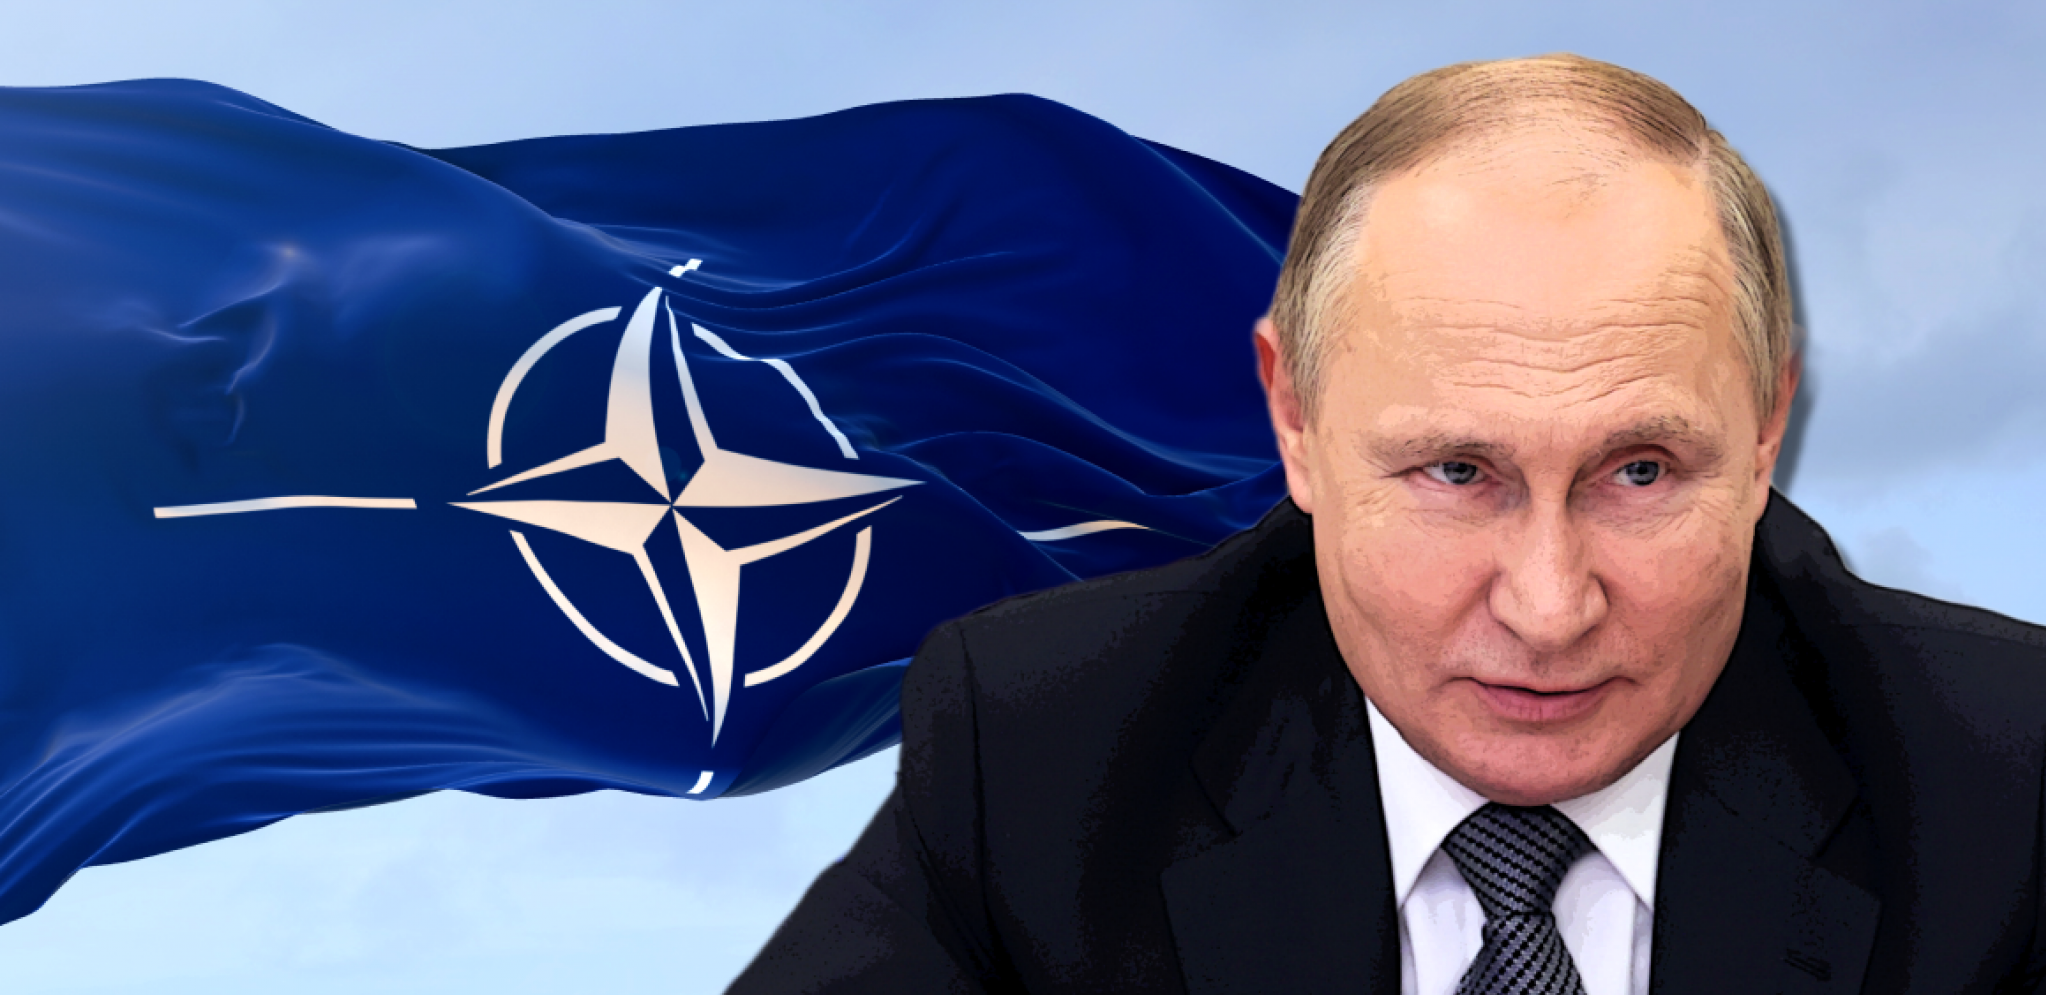 STIGAO PRELOMNI TRENUTAK U UKRAJINI!? NATO se busi u prsa - Moskva oštro upozorava!